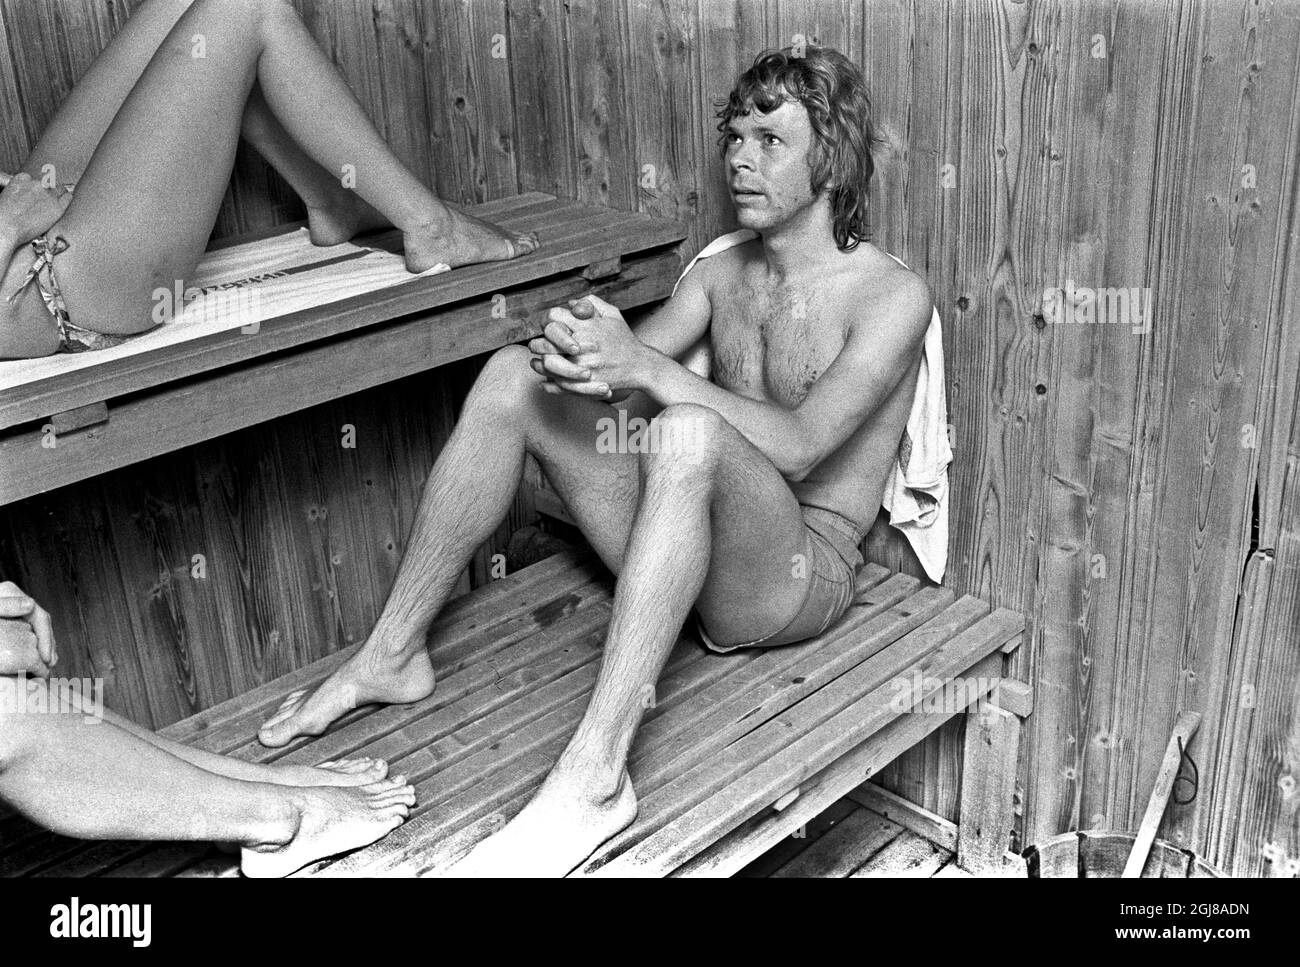 SWEDENV 1975-06-27 * for Your Files* Abba Bjorn Ulvaeus wird während einer Konzerttournee in Schweden beim Entspannen in einer Sauna in ramshyttan, Schweden, 27. Juni 1975 gesehen. Foto: Staffan Almquist / XP / TT / Kod: 2 ** OUT SWEDEN OUT** Stockfoto